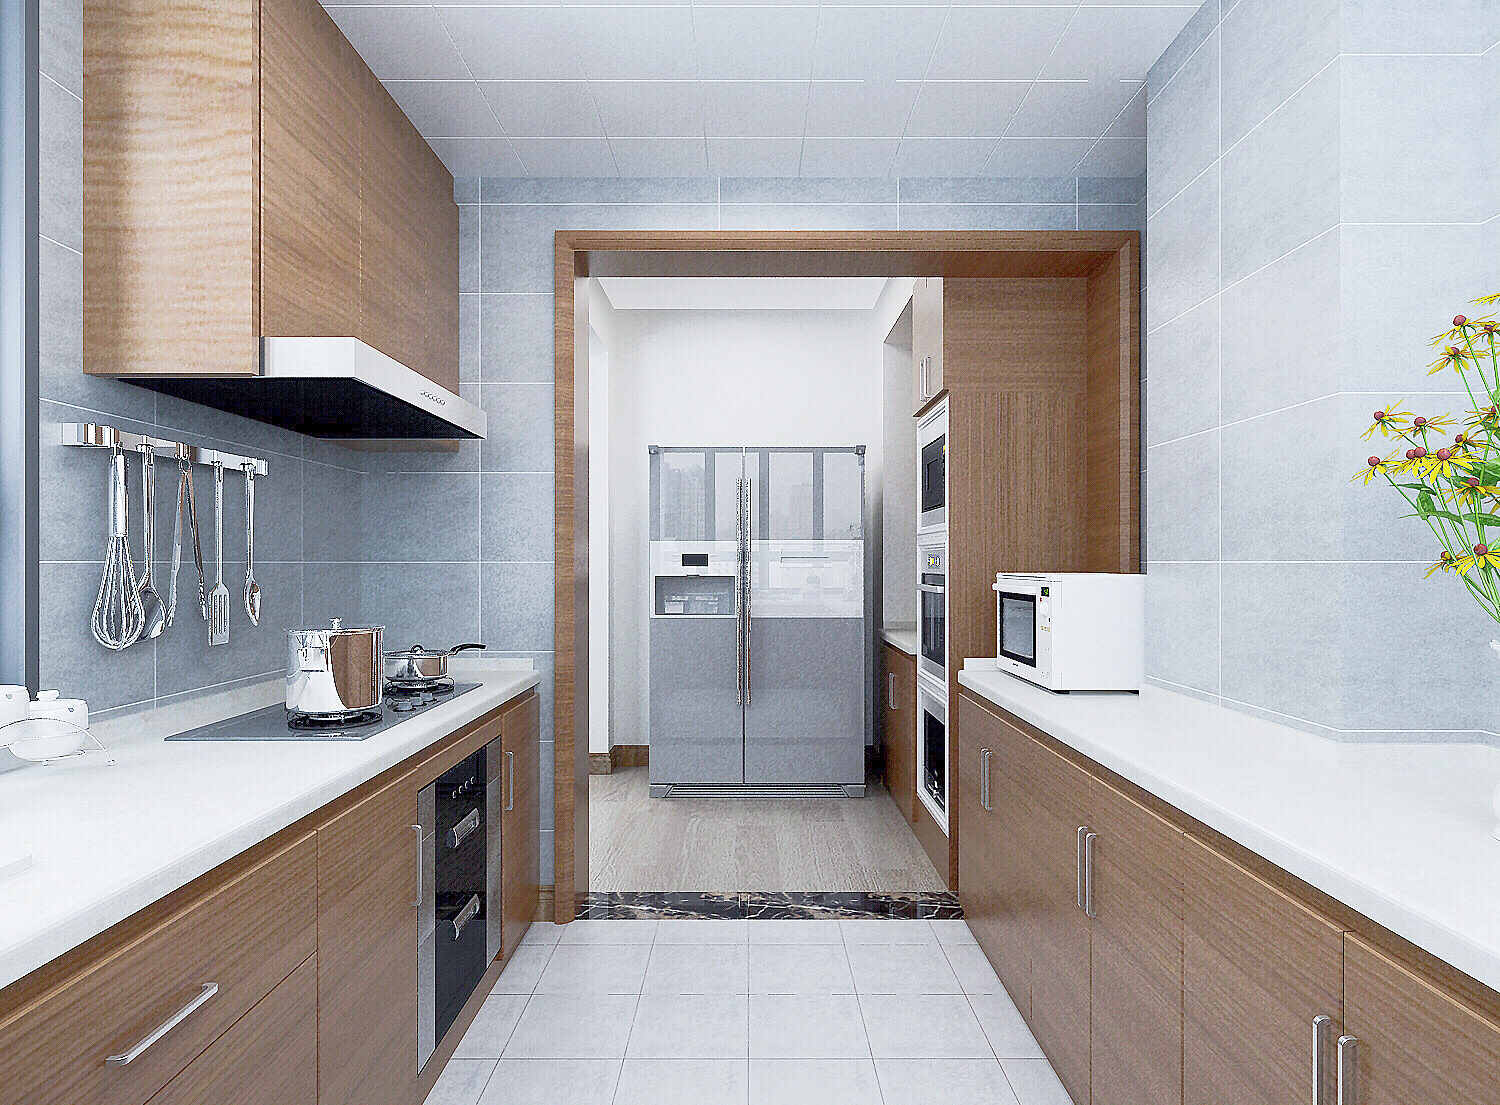 壹号学府165㎡四室两厅厨房现代风格装修案例效果图1-详细.jpg